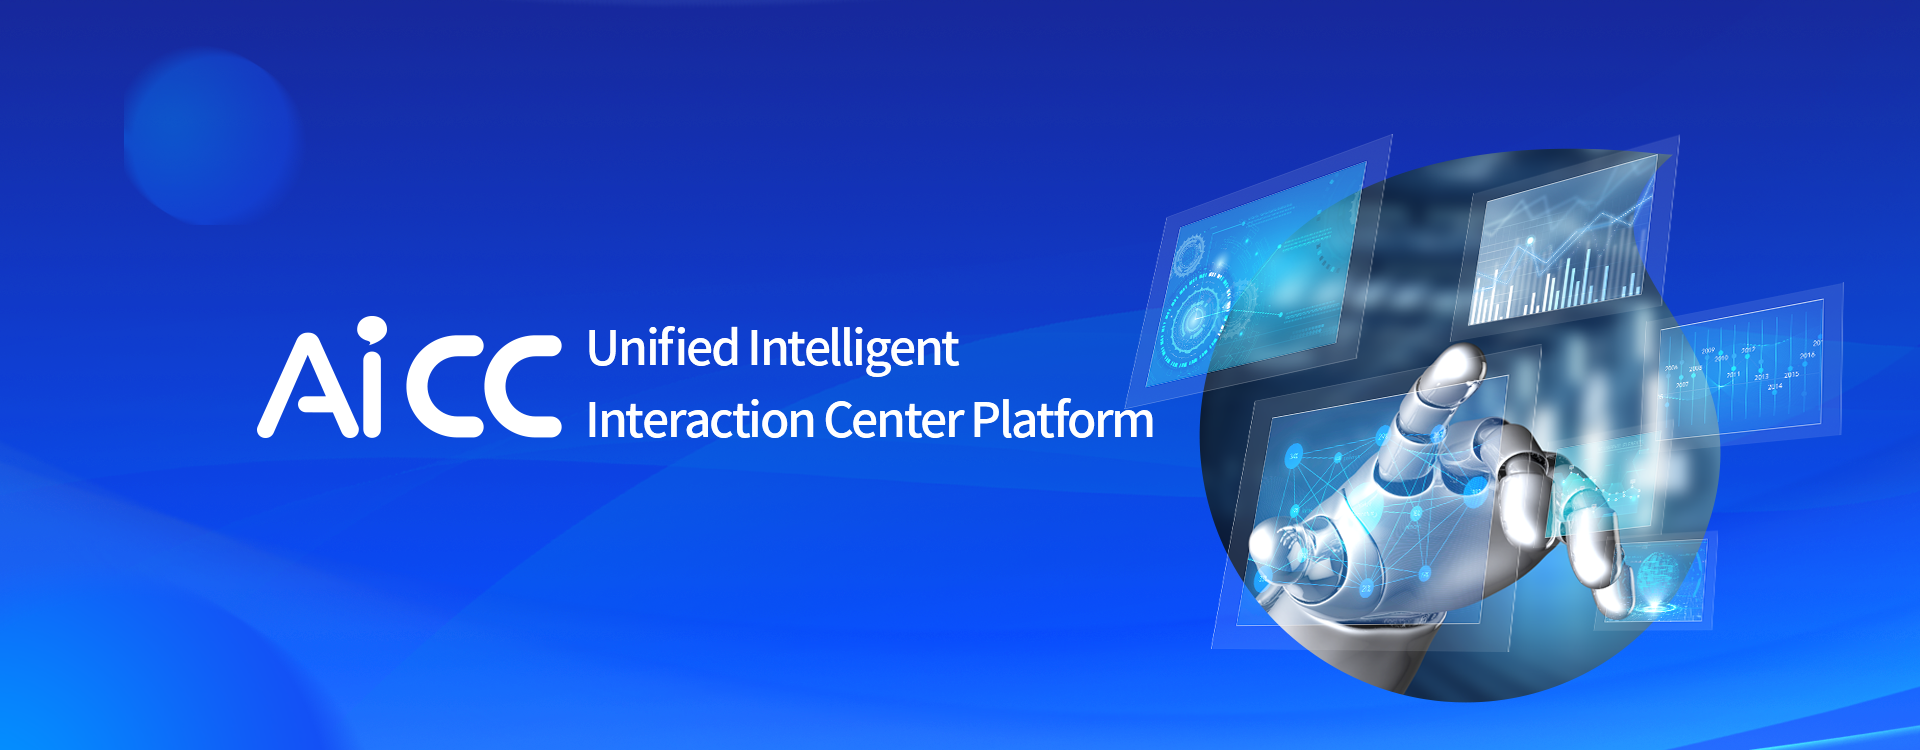 AiCC Unified Intelligent Interaction Center Platform